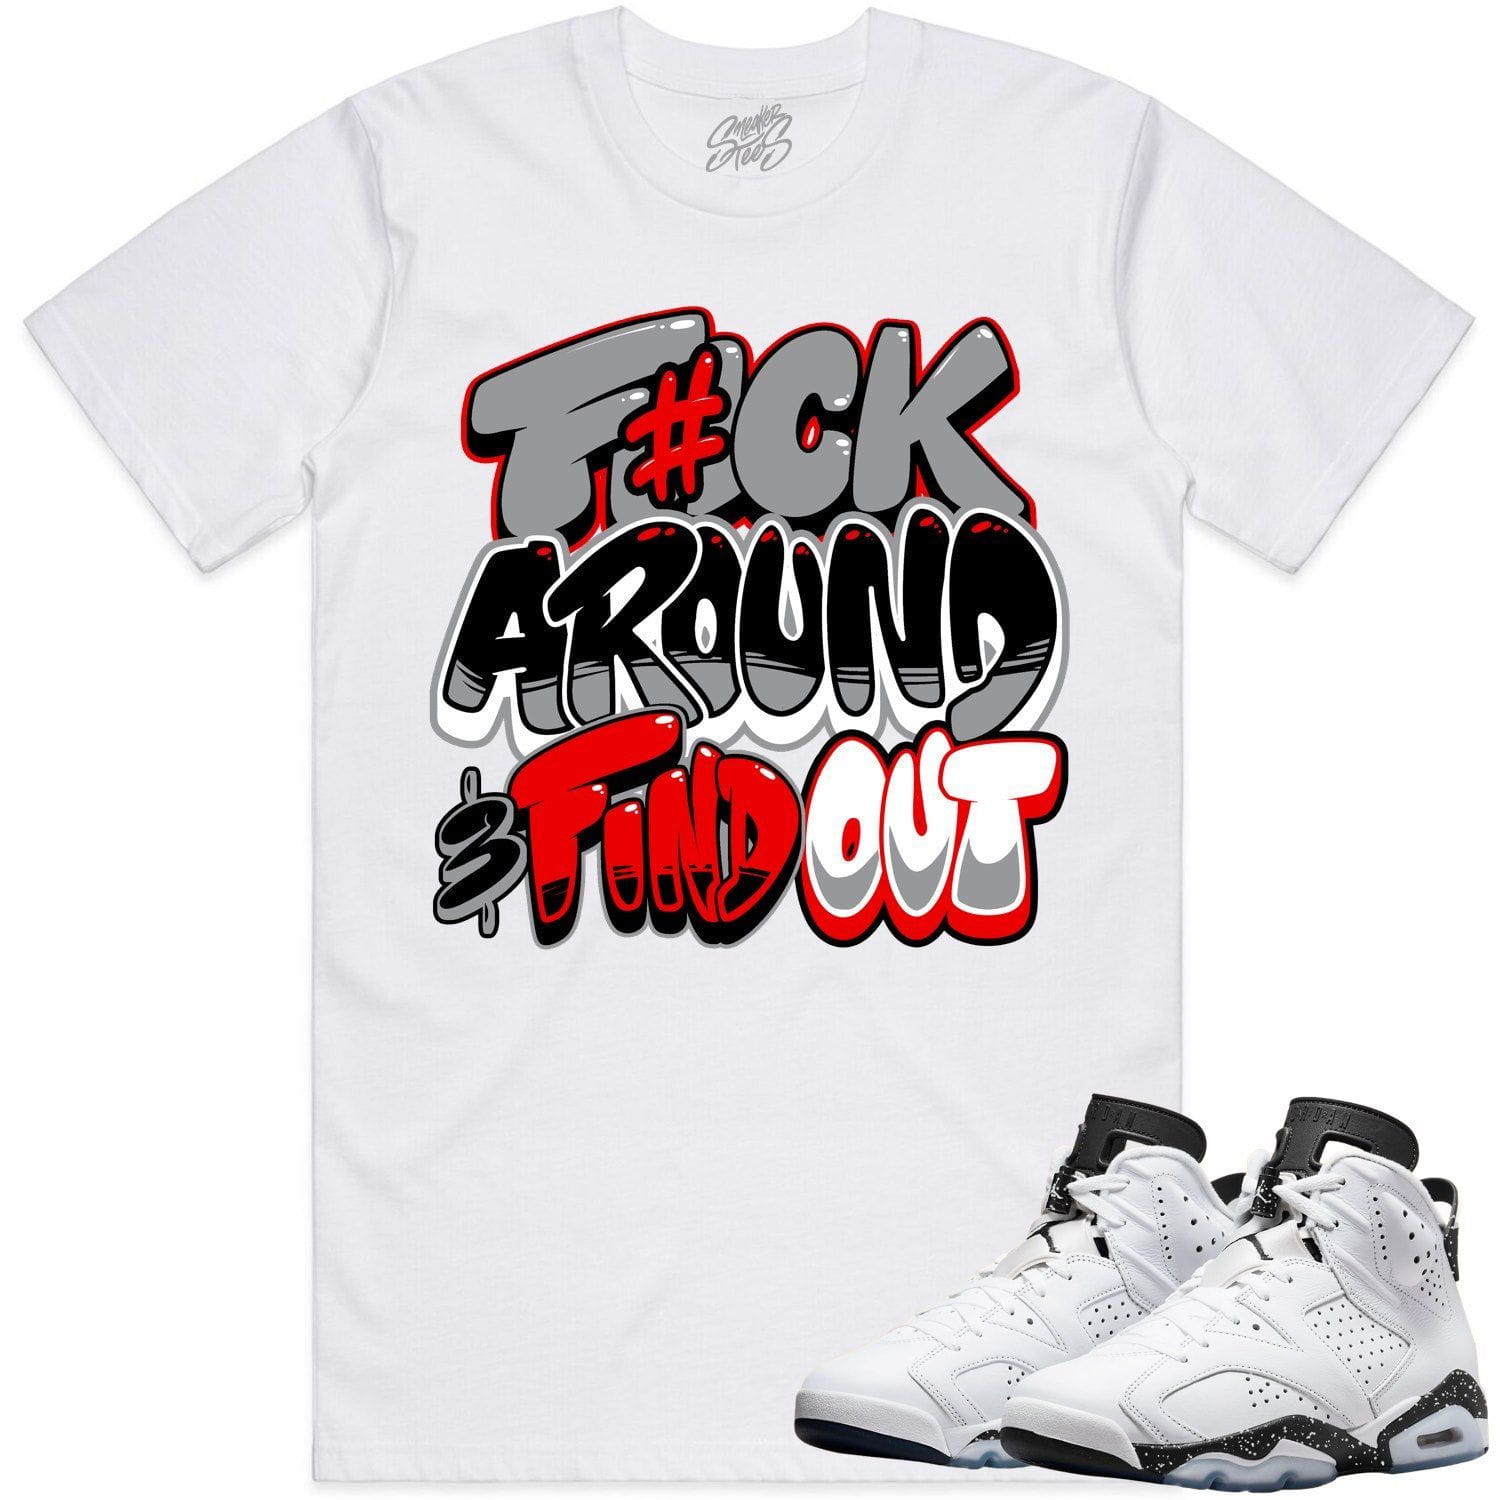 Oreo 6s Shirts - Jordan 6 Reverse Oreo 6s Sneaker Tees - F#ck